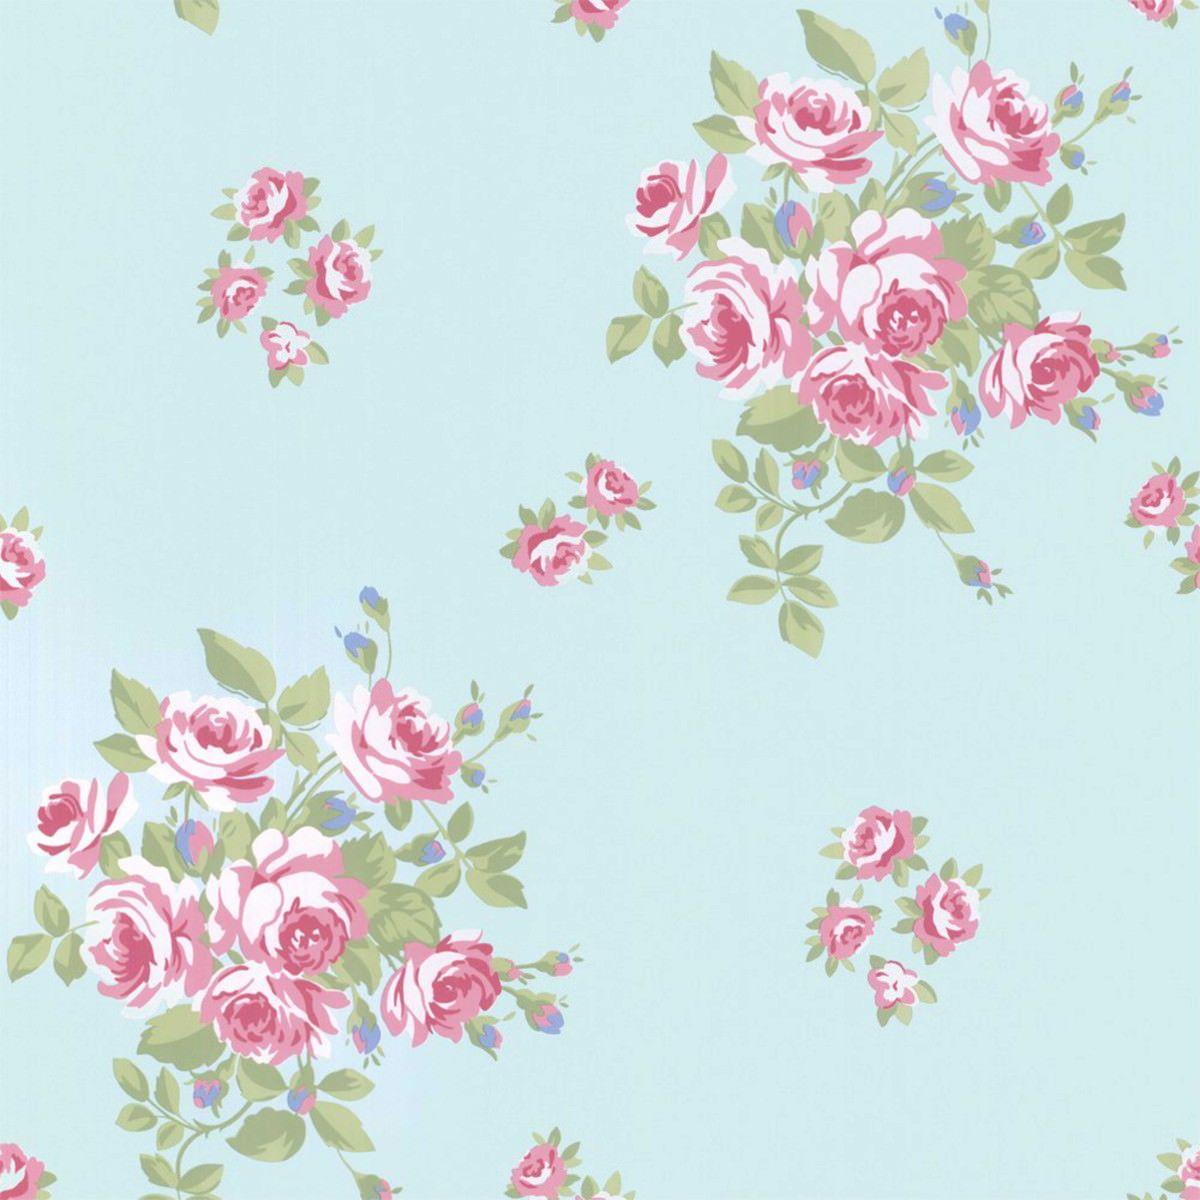 Download Free Floral Vintage Wallpaper